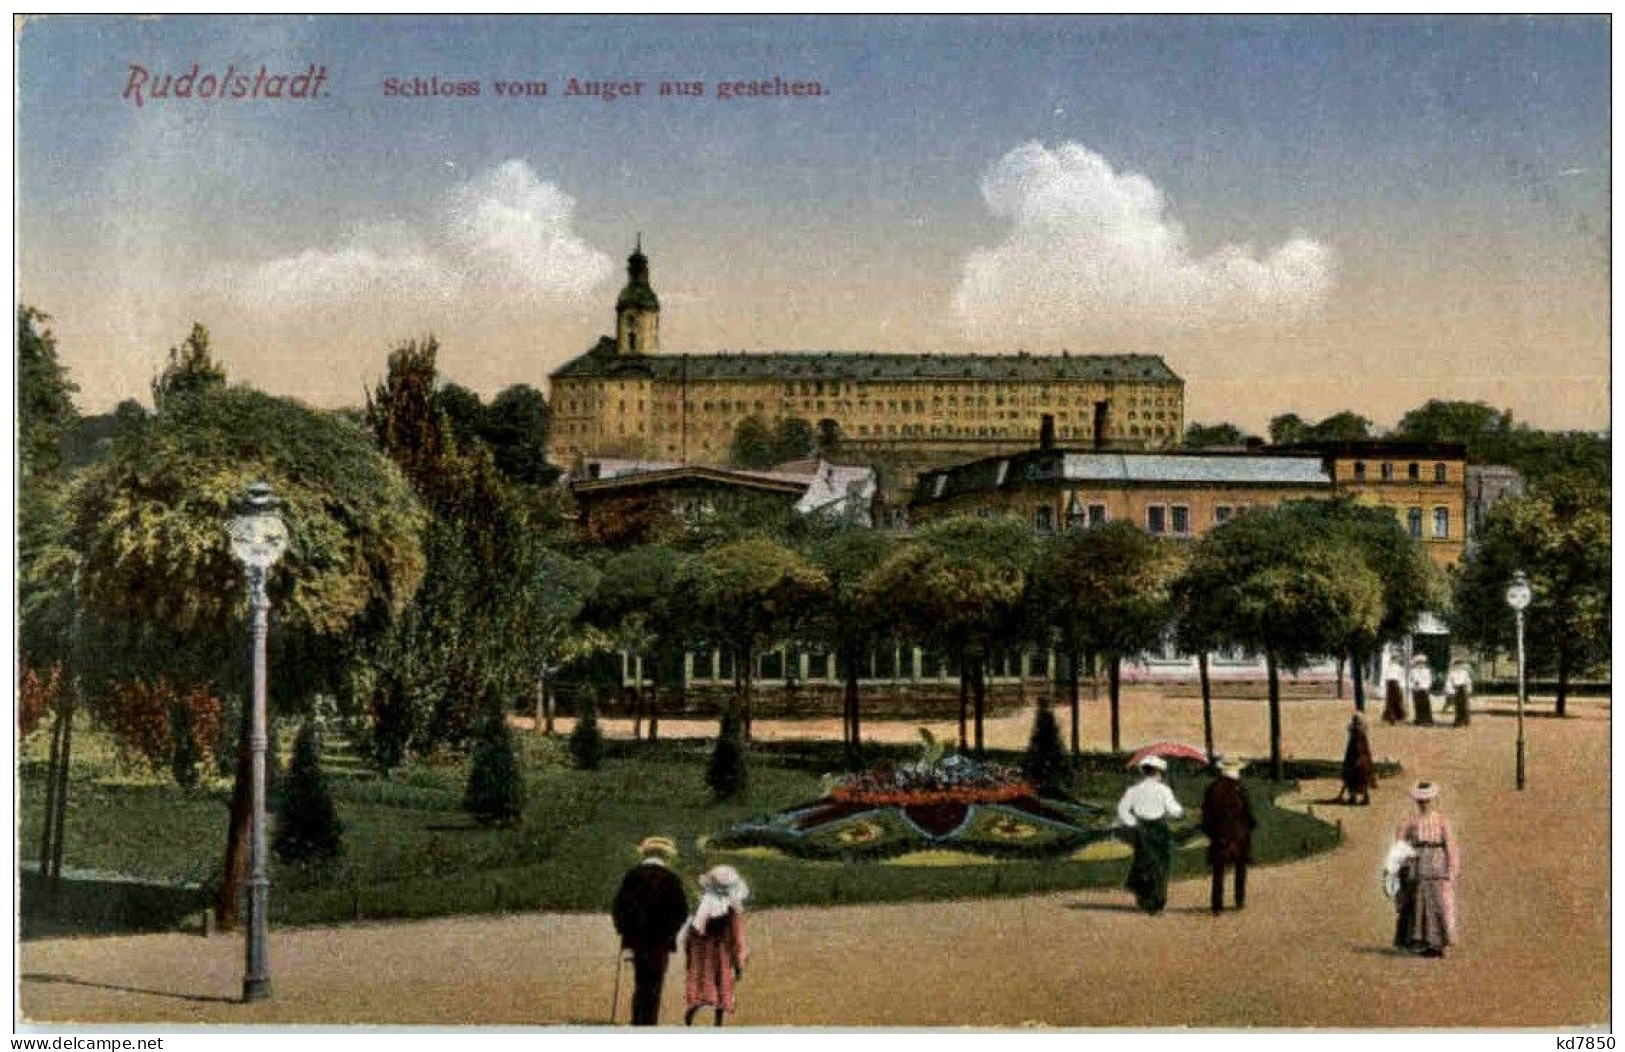 Rudolstadt - Schloss - Rudolstadt